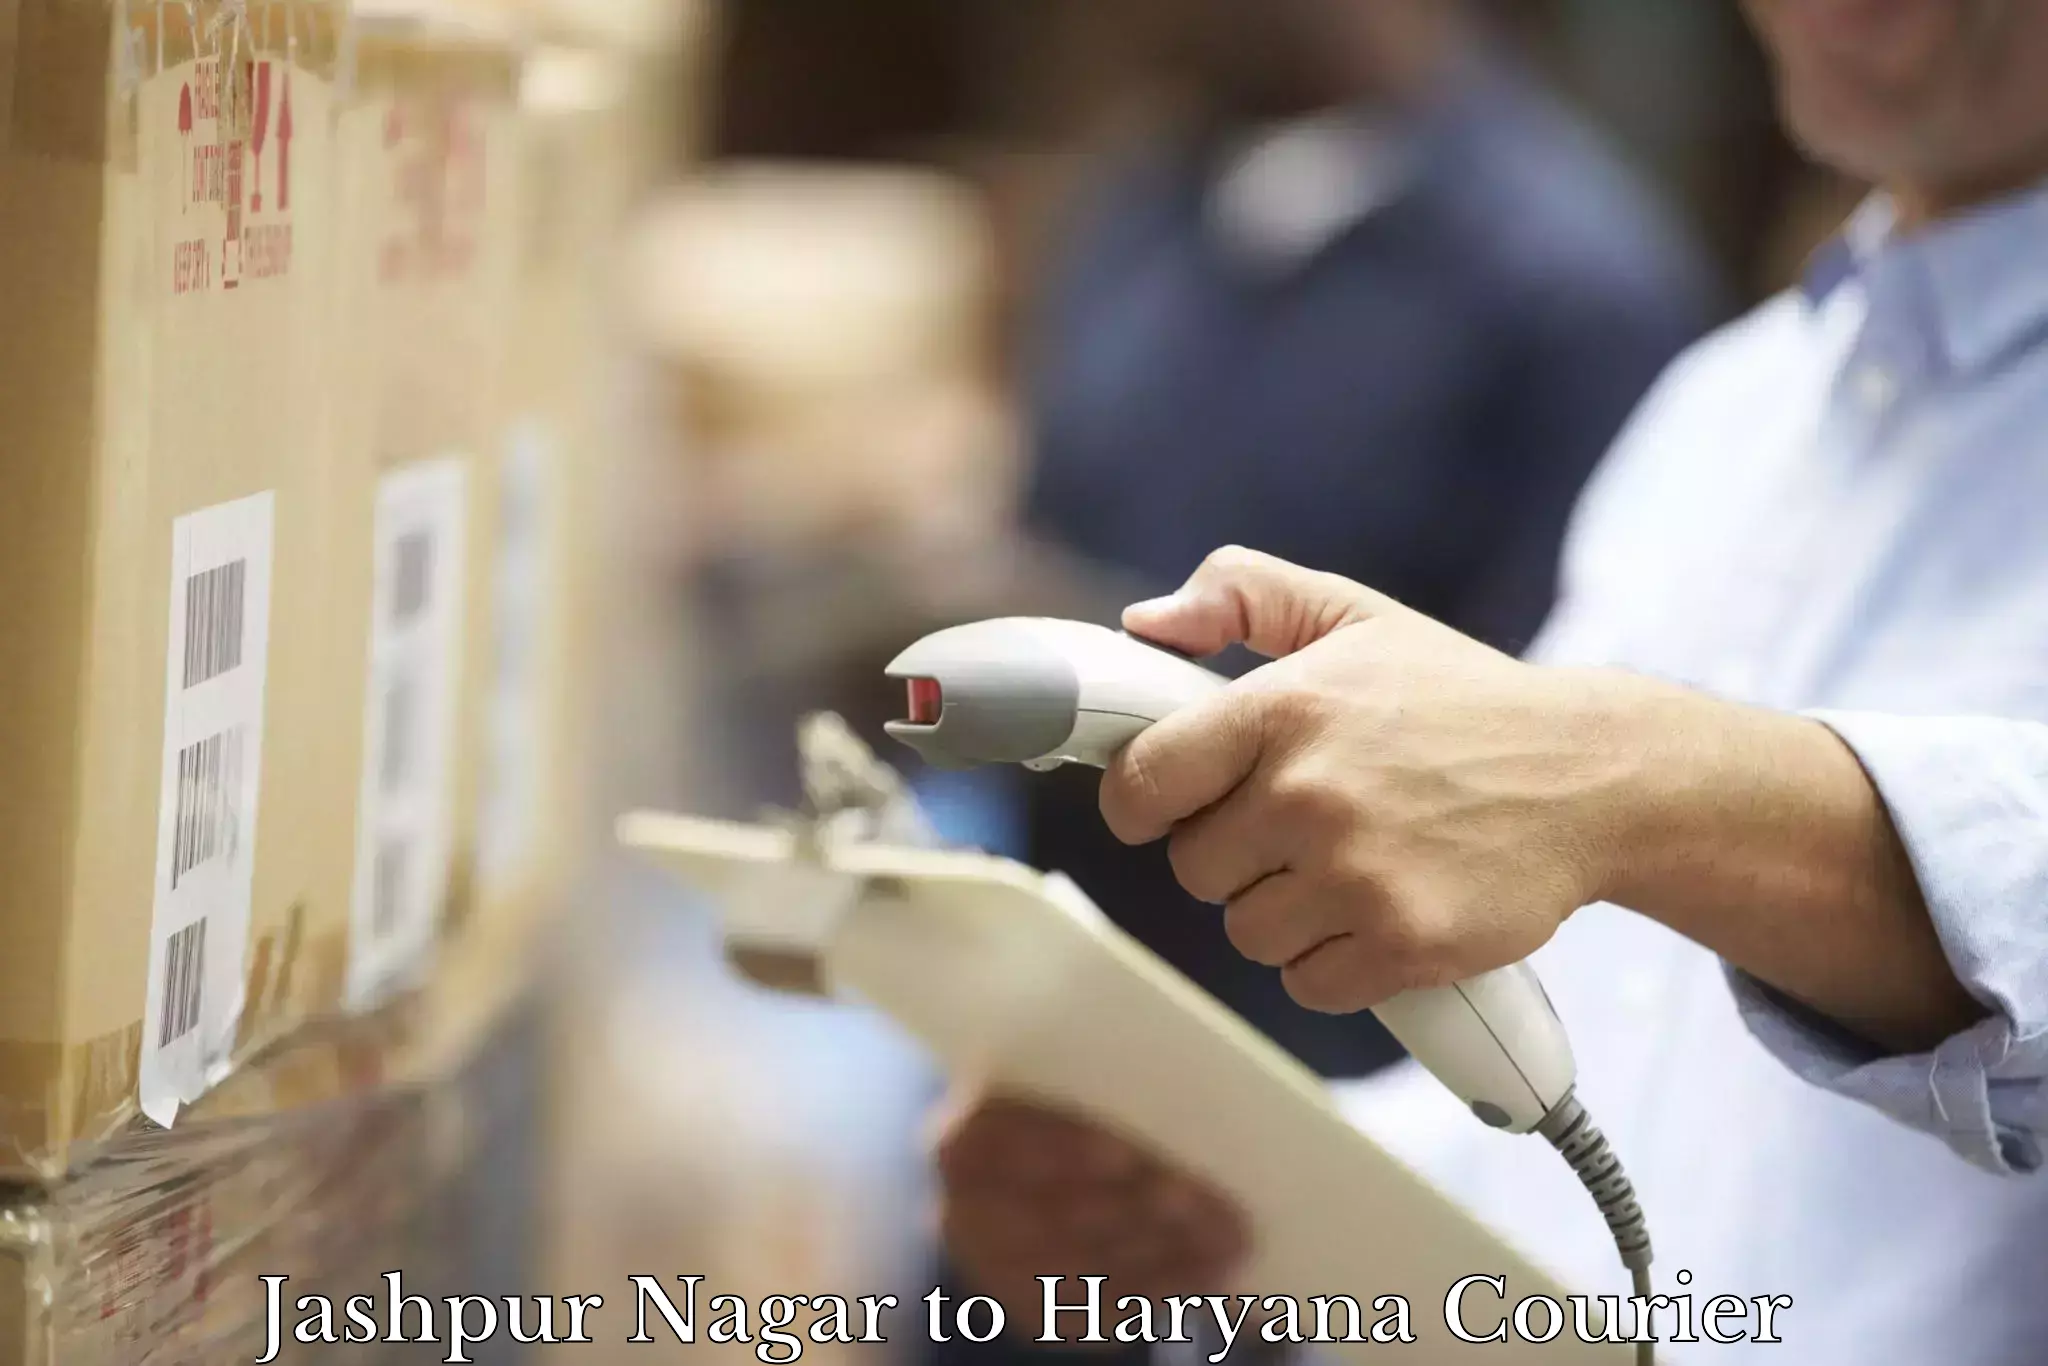 Express logistics providers Jashpur Nagar to Haryana